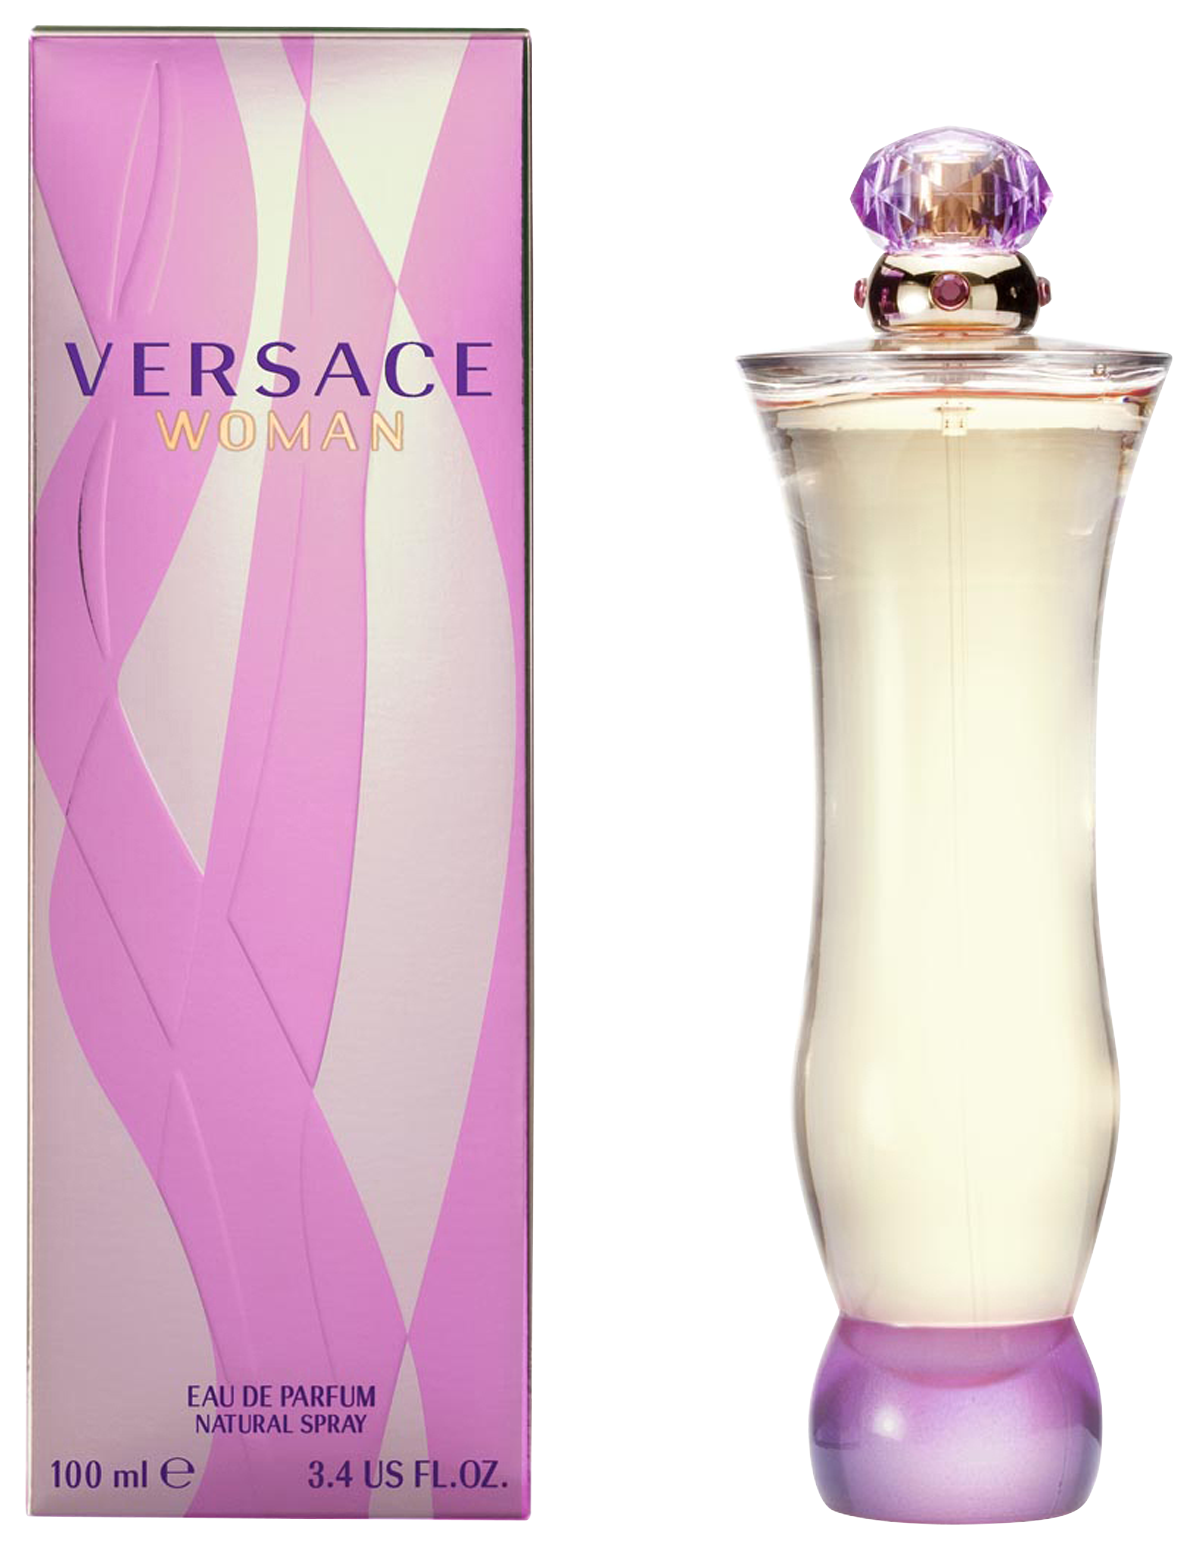 Versace Woman Eau de Parfum 100 ml